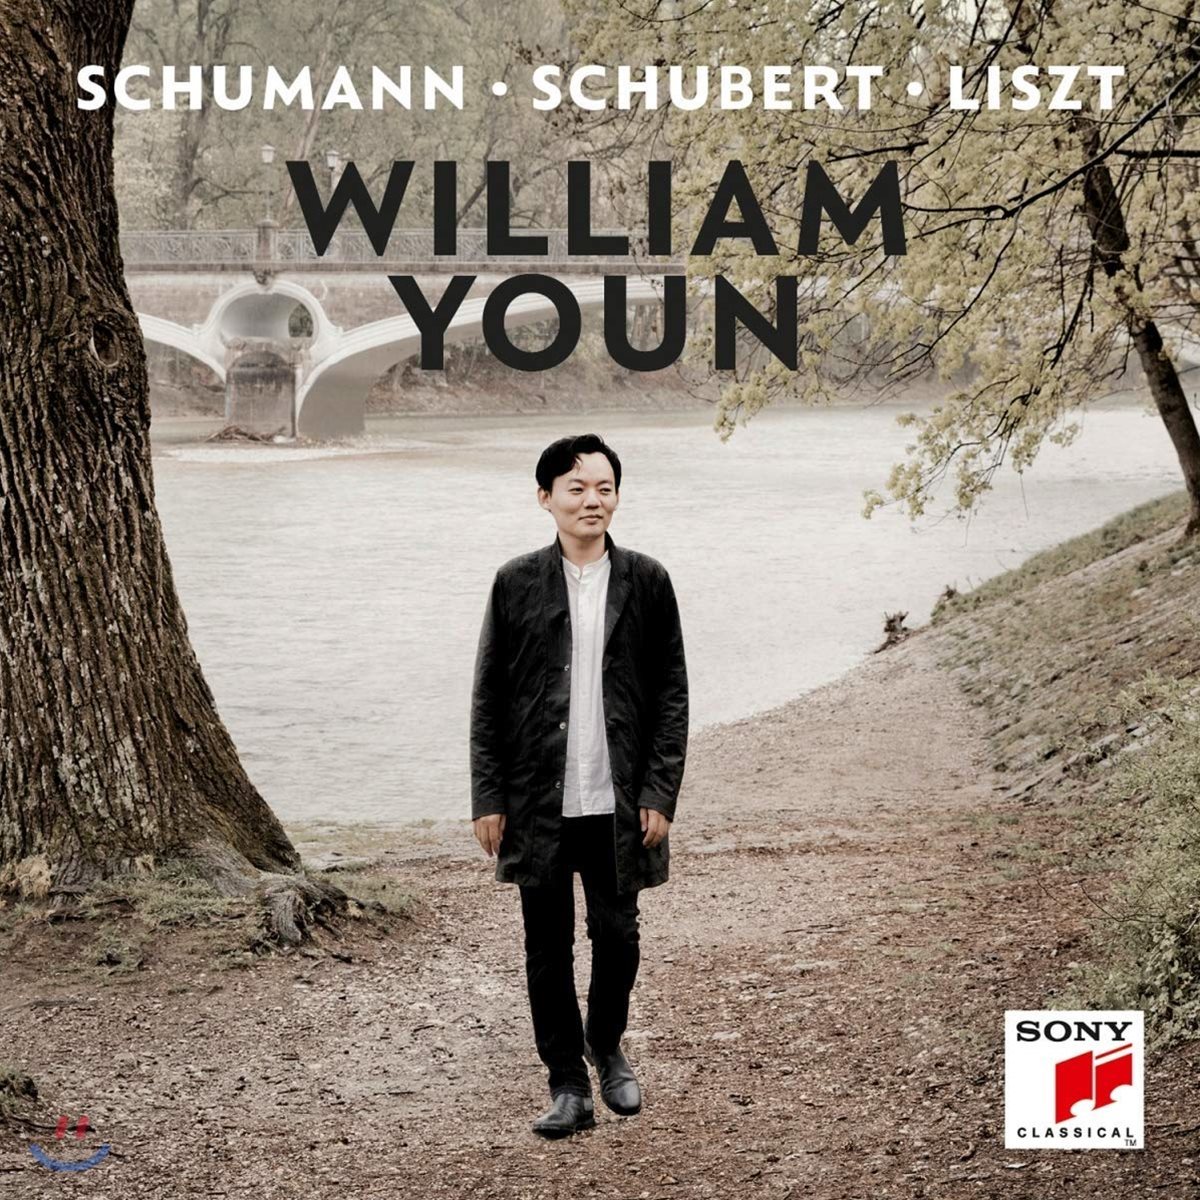 윤홍천 - 슈만 / 슈베르트 / 리스트 / 젬린스키: 피아노 독주집 (Schumann - Schubert - Liszt)